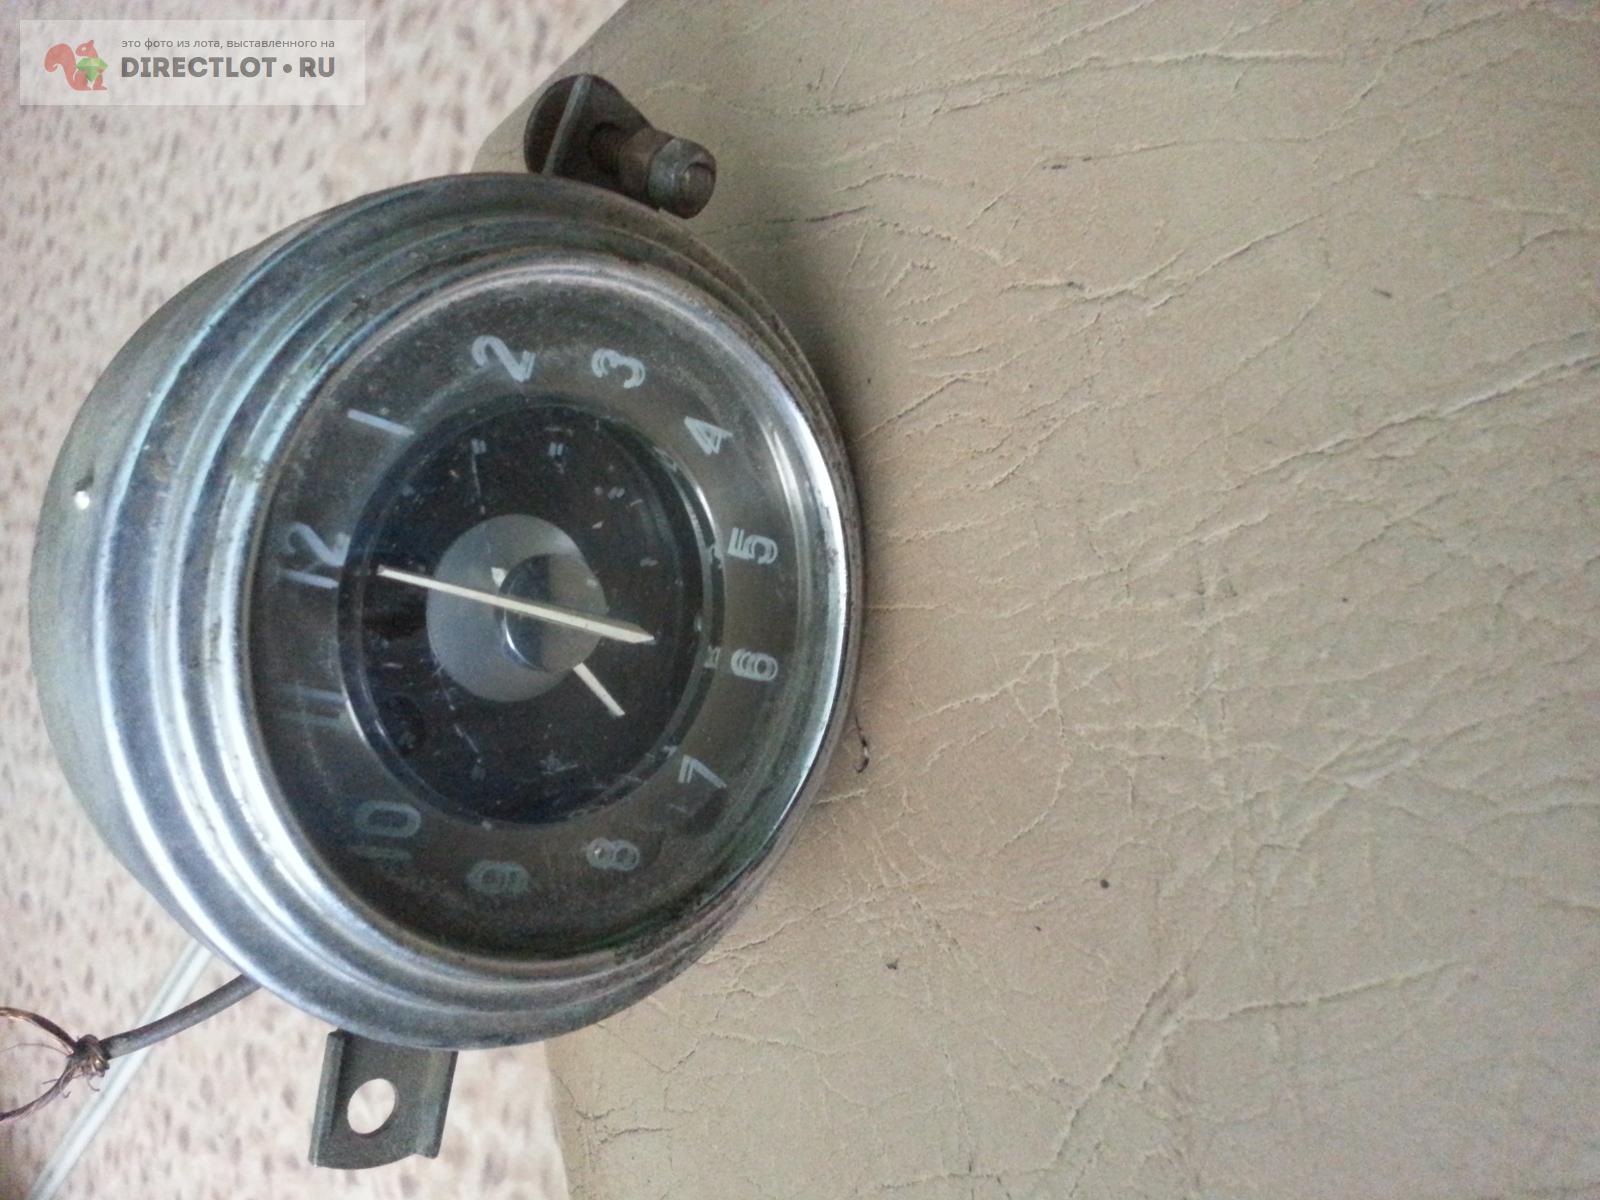 Часы автомобильные ретро электрические  в Улан - Удэ цена 1500 Р .